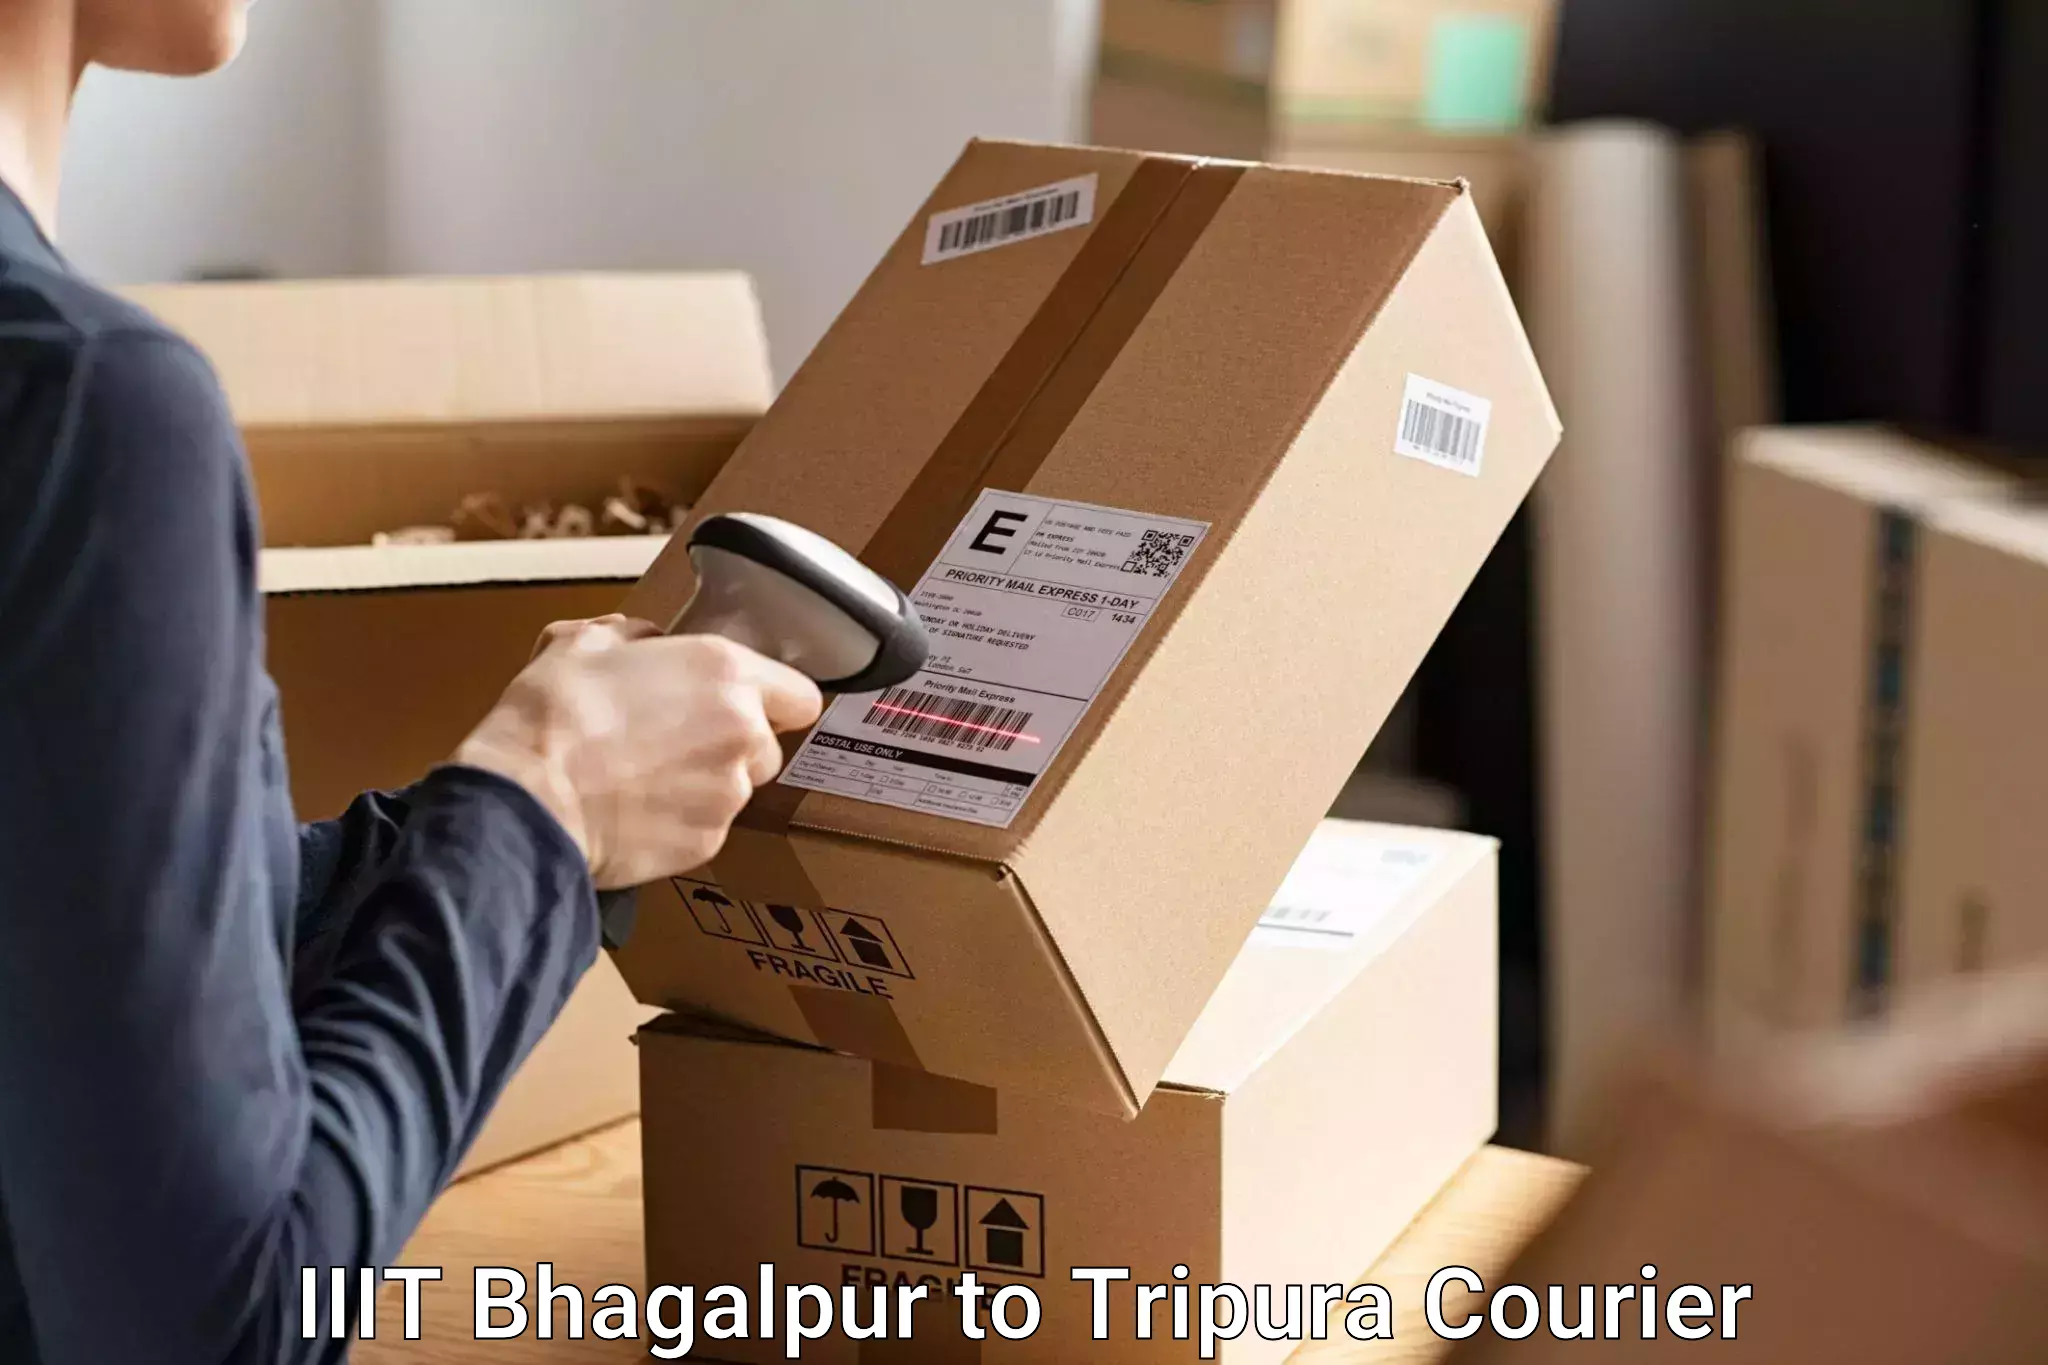 Luggage transport service IIIT Bhagalpur to Aambasa